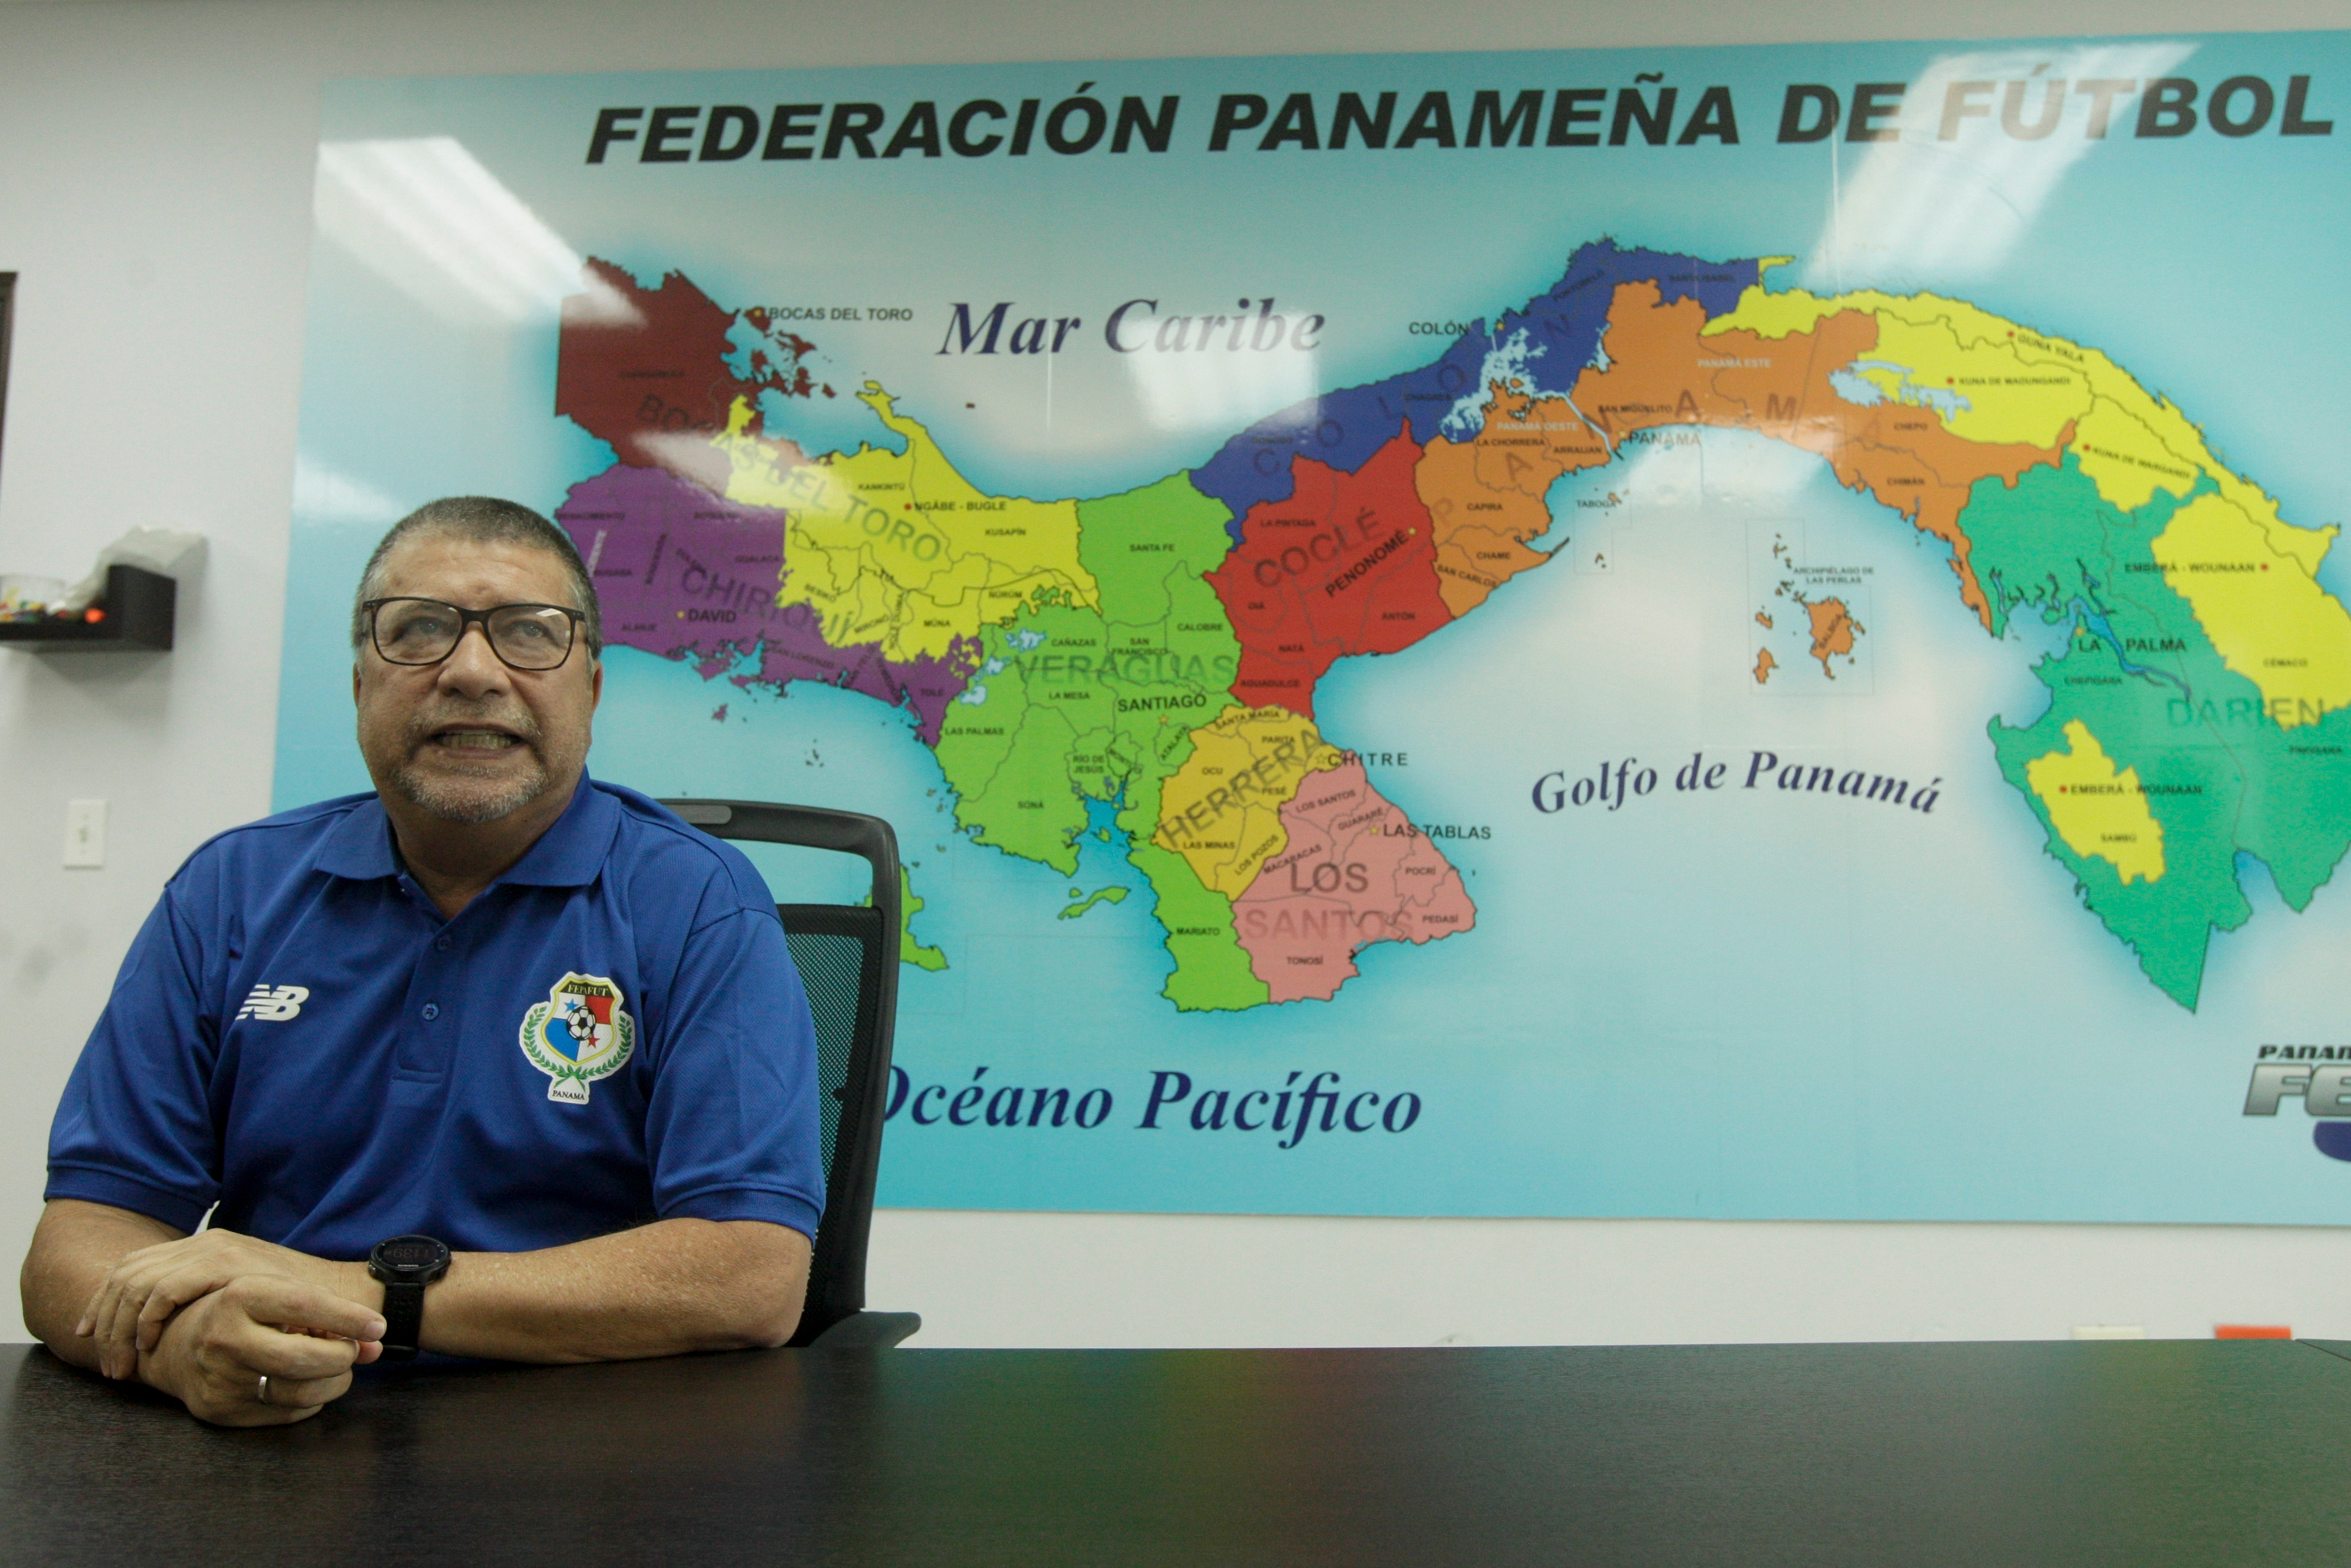 El entrenador colombiano Hernán Darío "Bolillo" Gómez cambió a Panamá